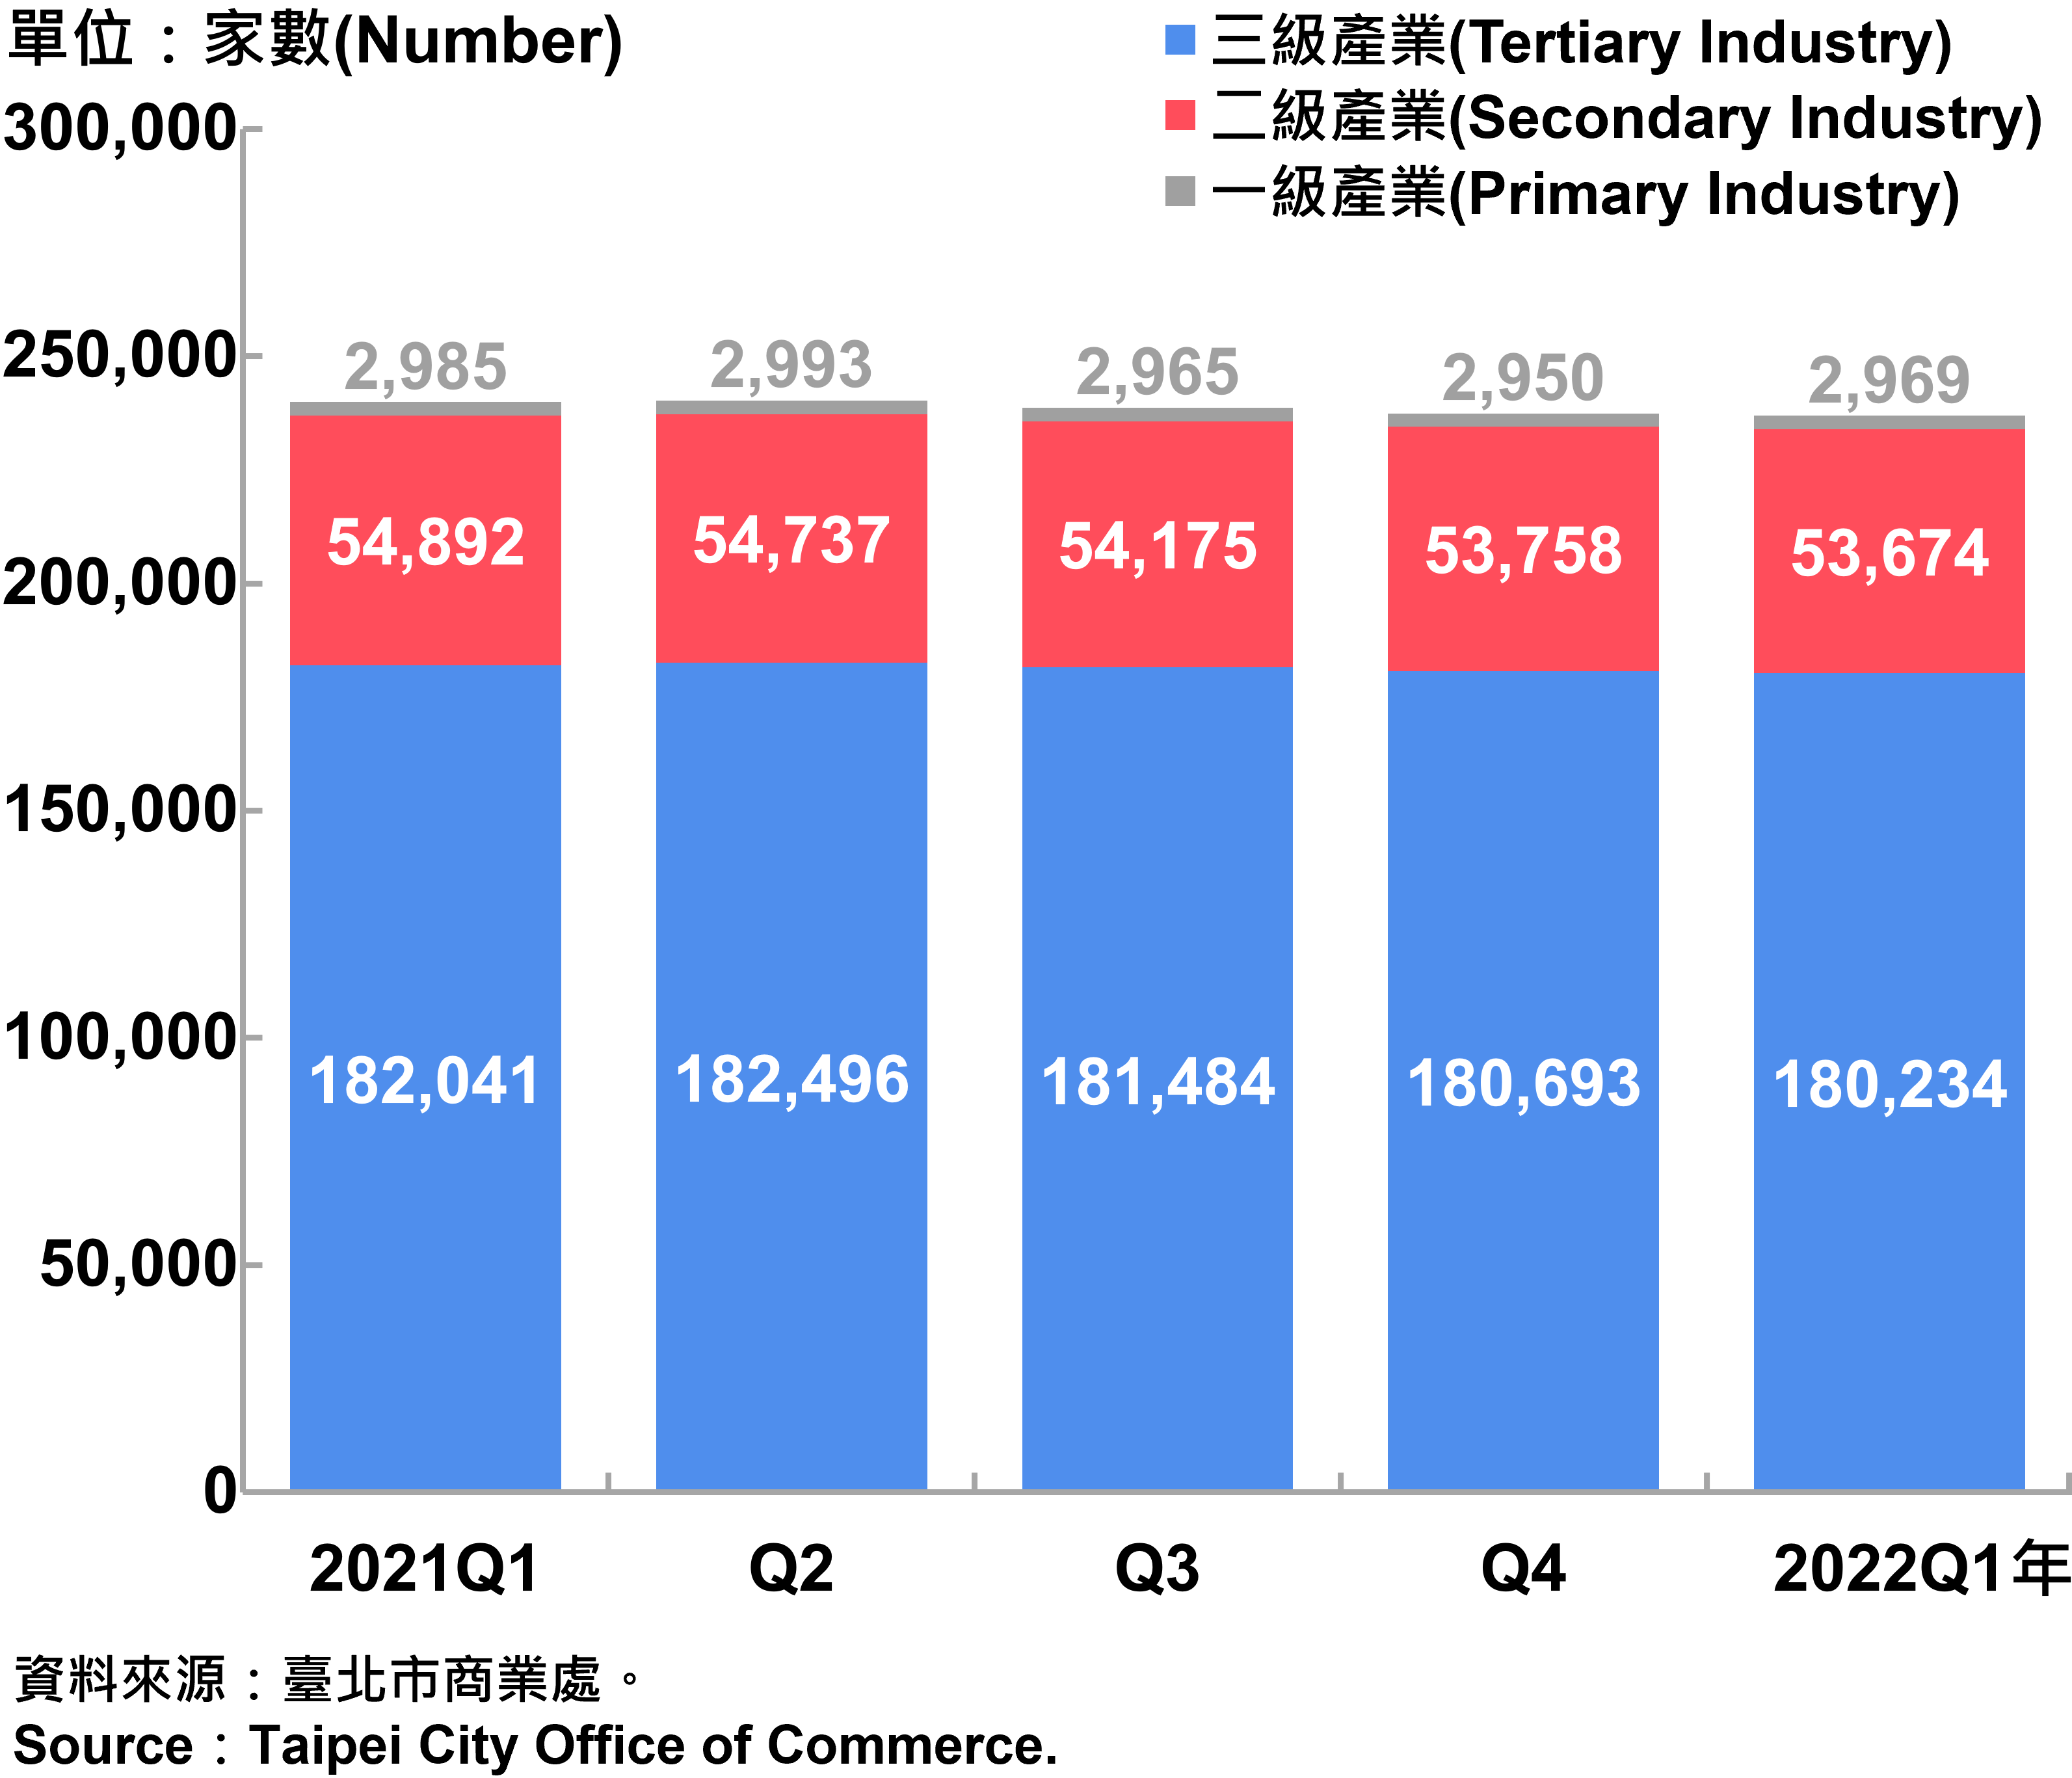 臺北市一二三級產業登記家數—2022Q1 Number of Primary , Secondary and Tertiary Industry in Taipei City—2022Q1